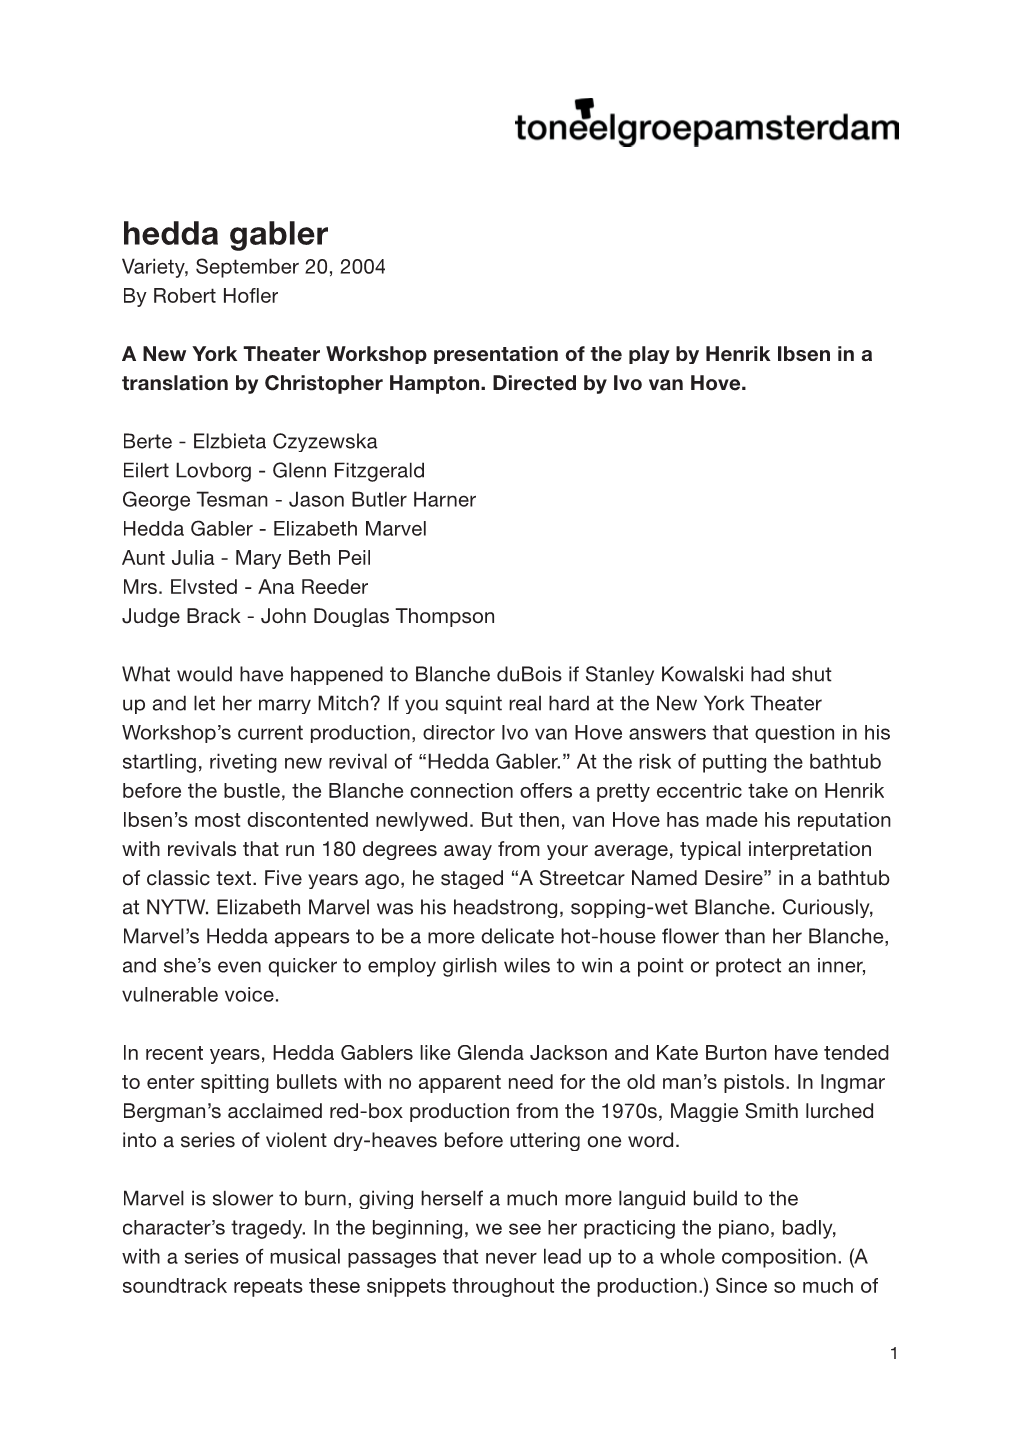 Hedda Gabler Variety, September 20, 2004 by Robert Hoﬂ Er